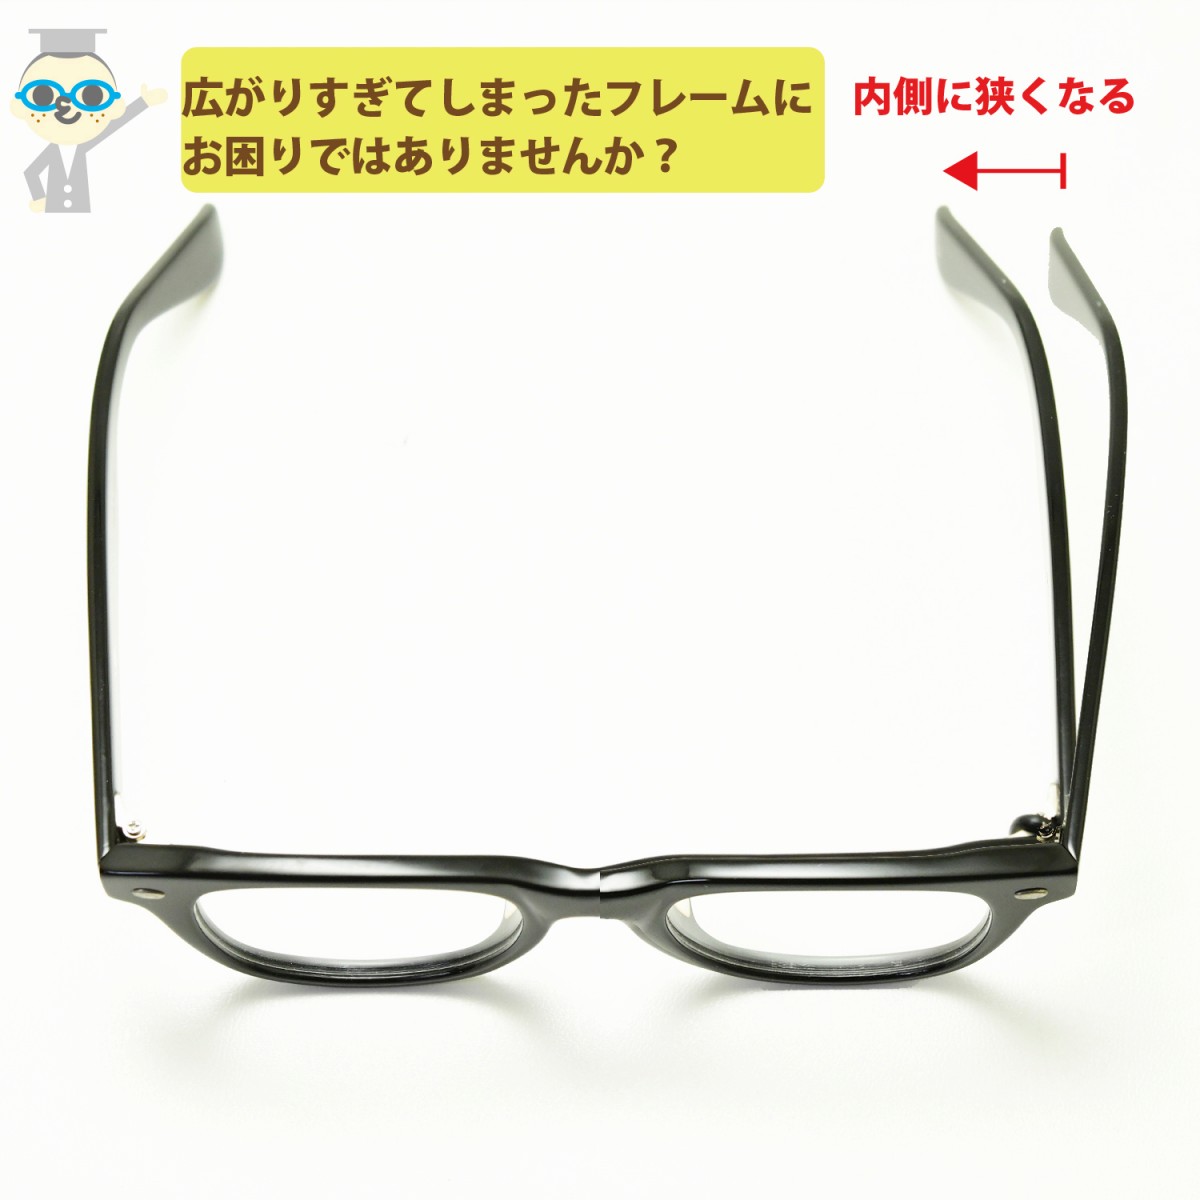 アジャストリングフレームの幅が広がってゆくなってしまったメガネに幅を狭くできる丁番リングです。1ペアセット（2個）での販売です